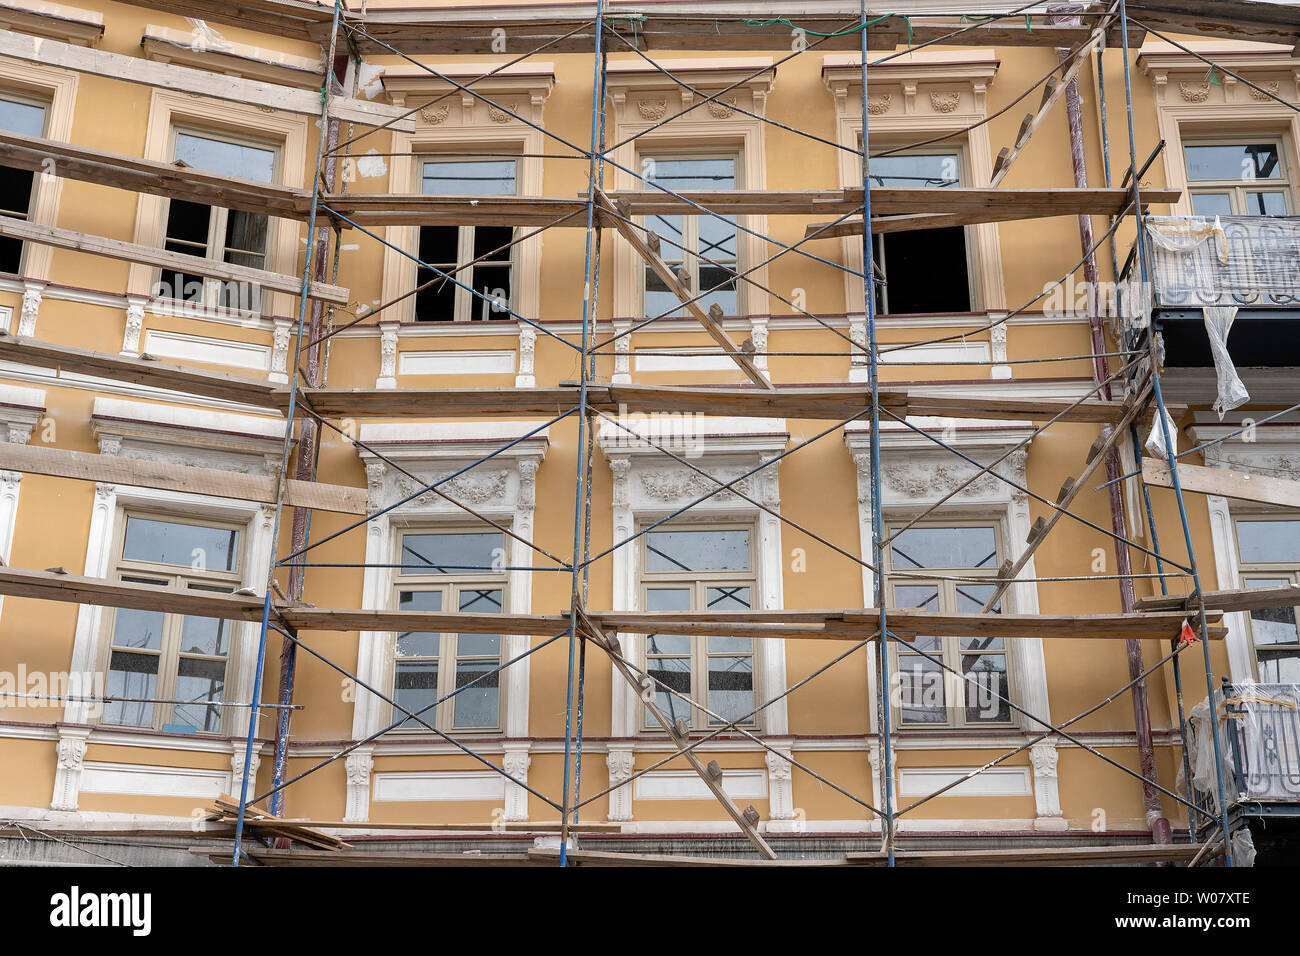 Gerüst am Haus, Renovierung. Gerüst am Gebäude, beige Wand und Fenster.  Gerüstsystem im Bau Stockfotografie - Alamy